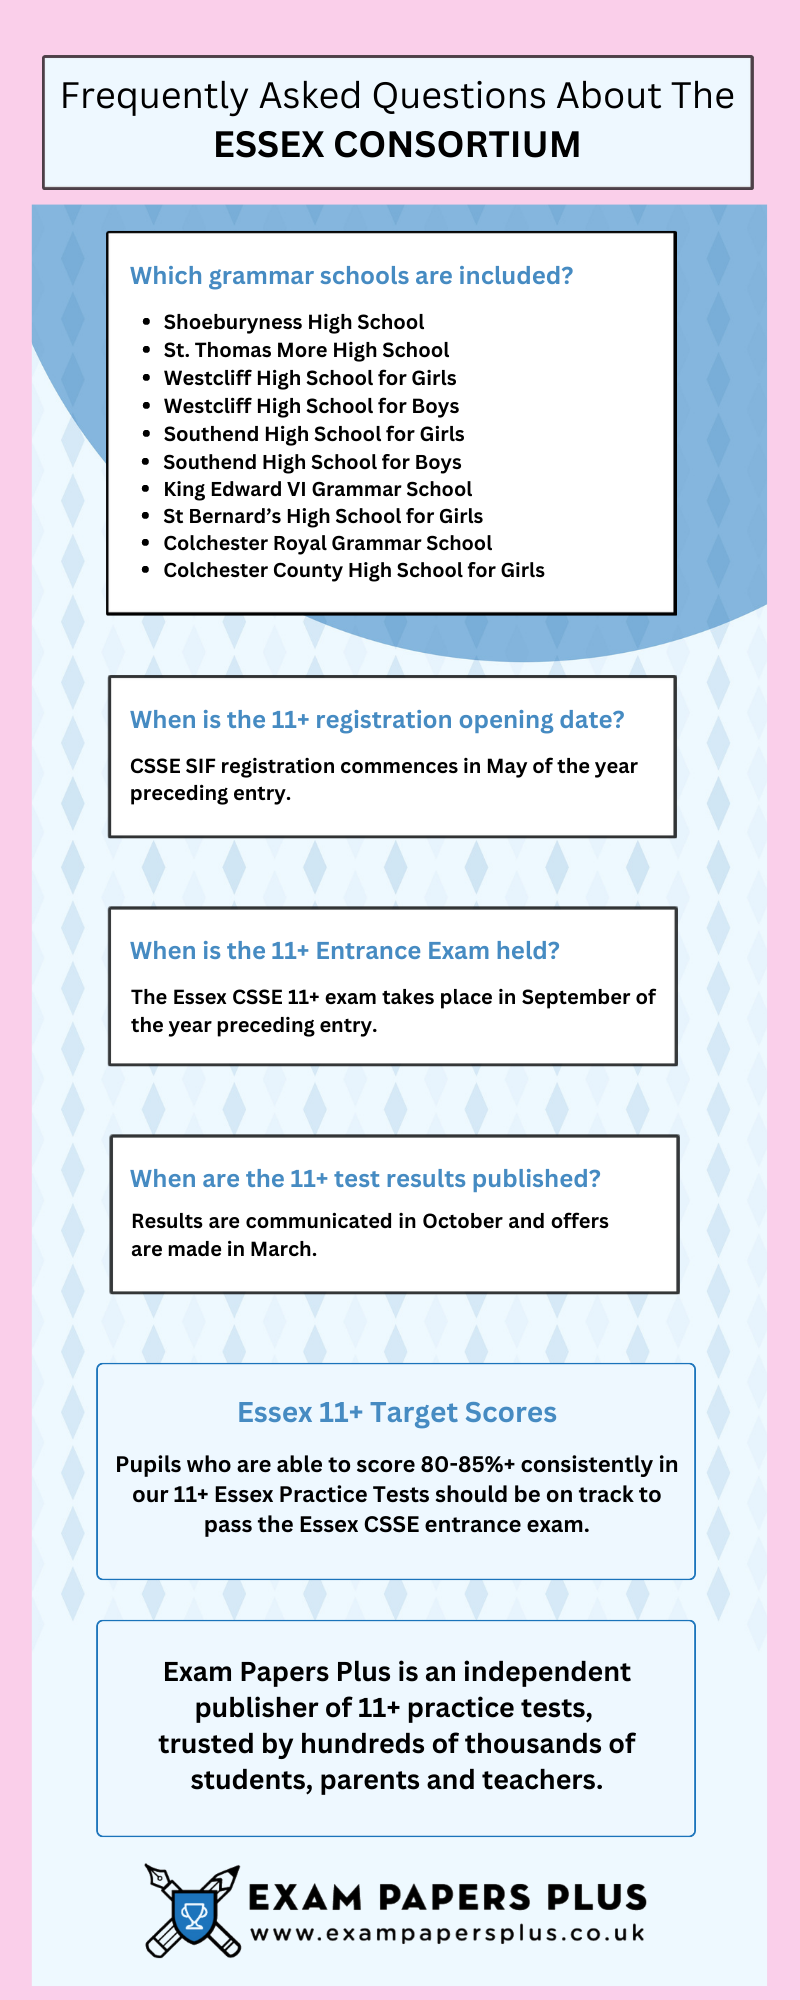 Essex 11 Plus CSSE Exam information